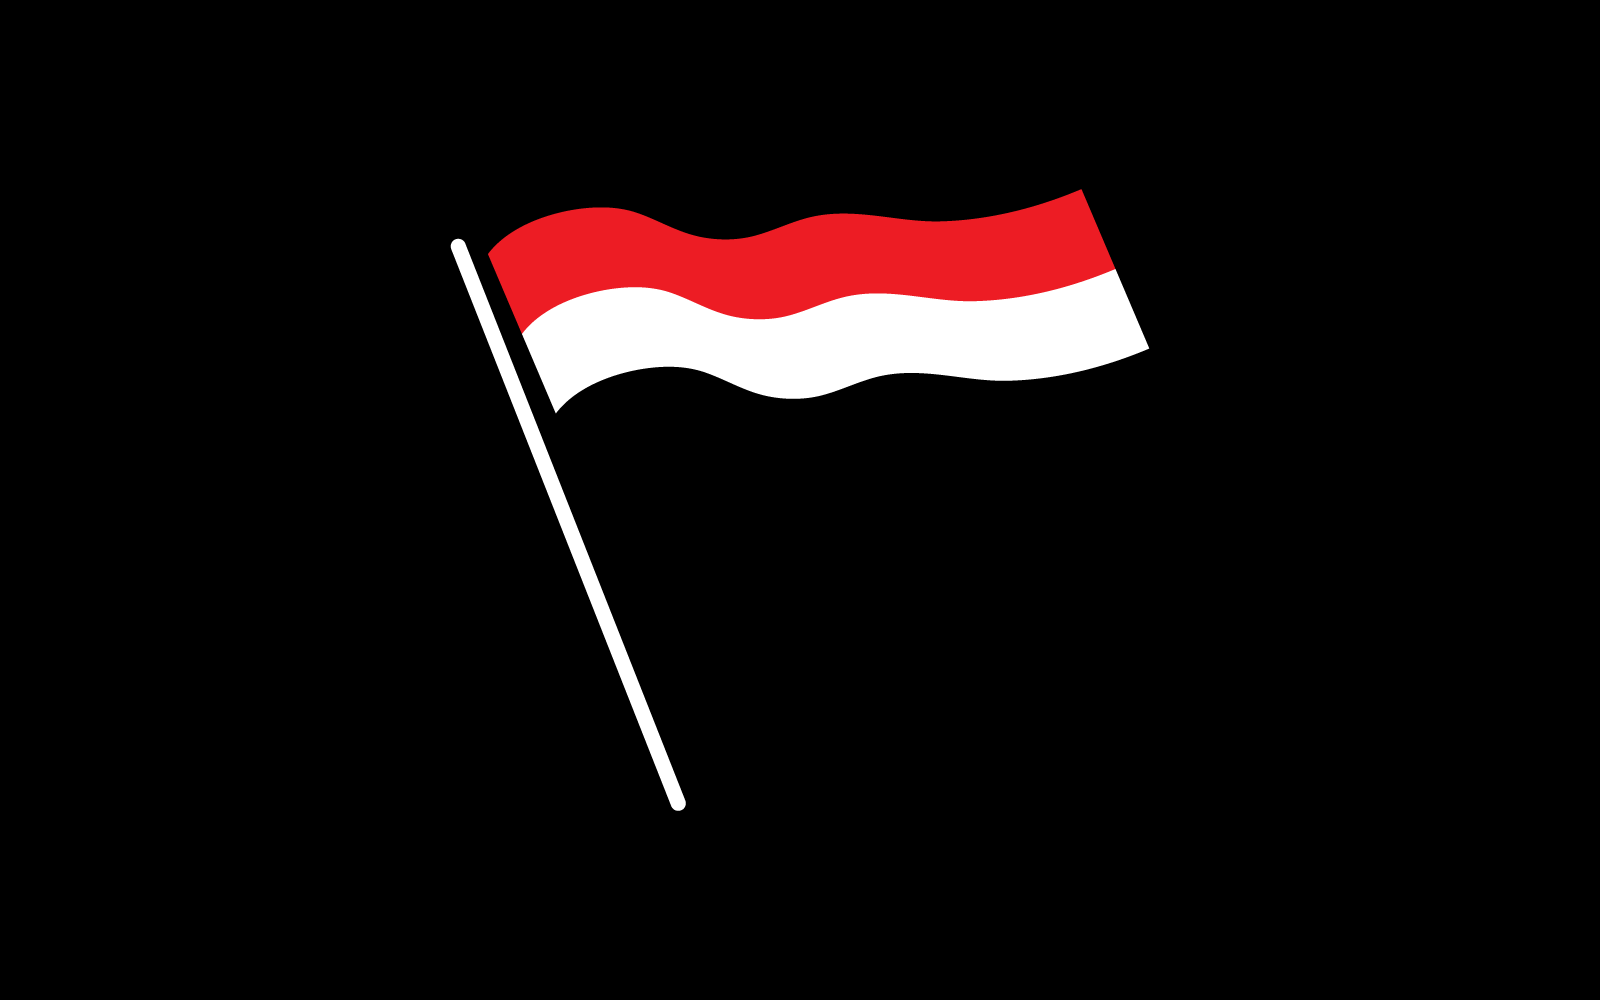 Bandeira da Indonésia ilustração em vetor vermelho e branco